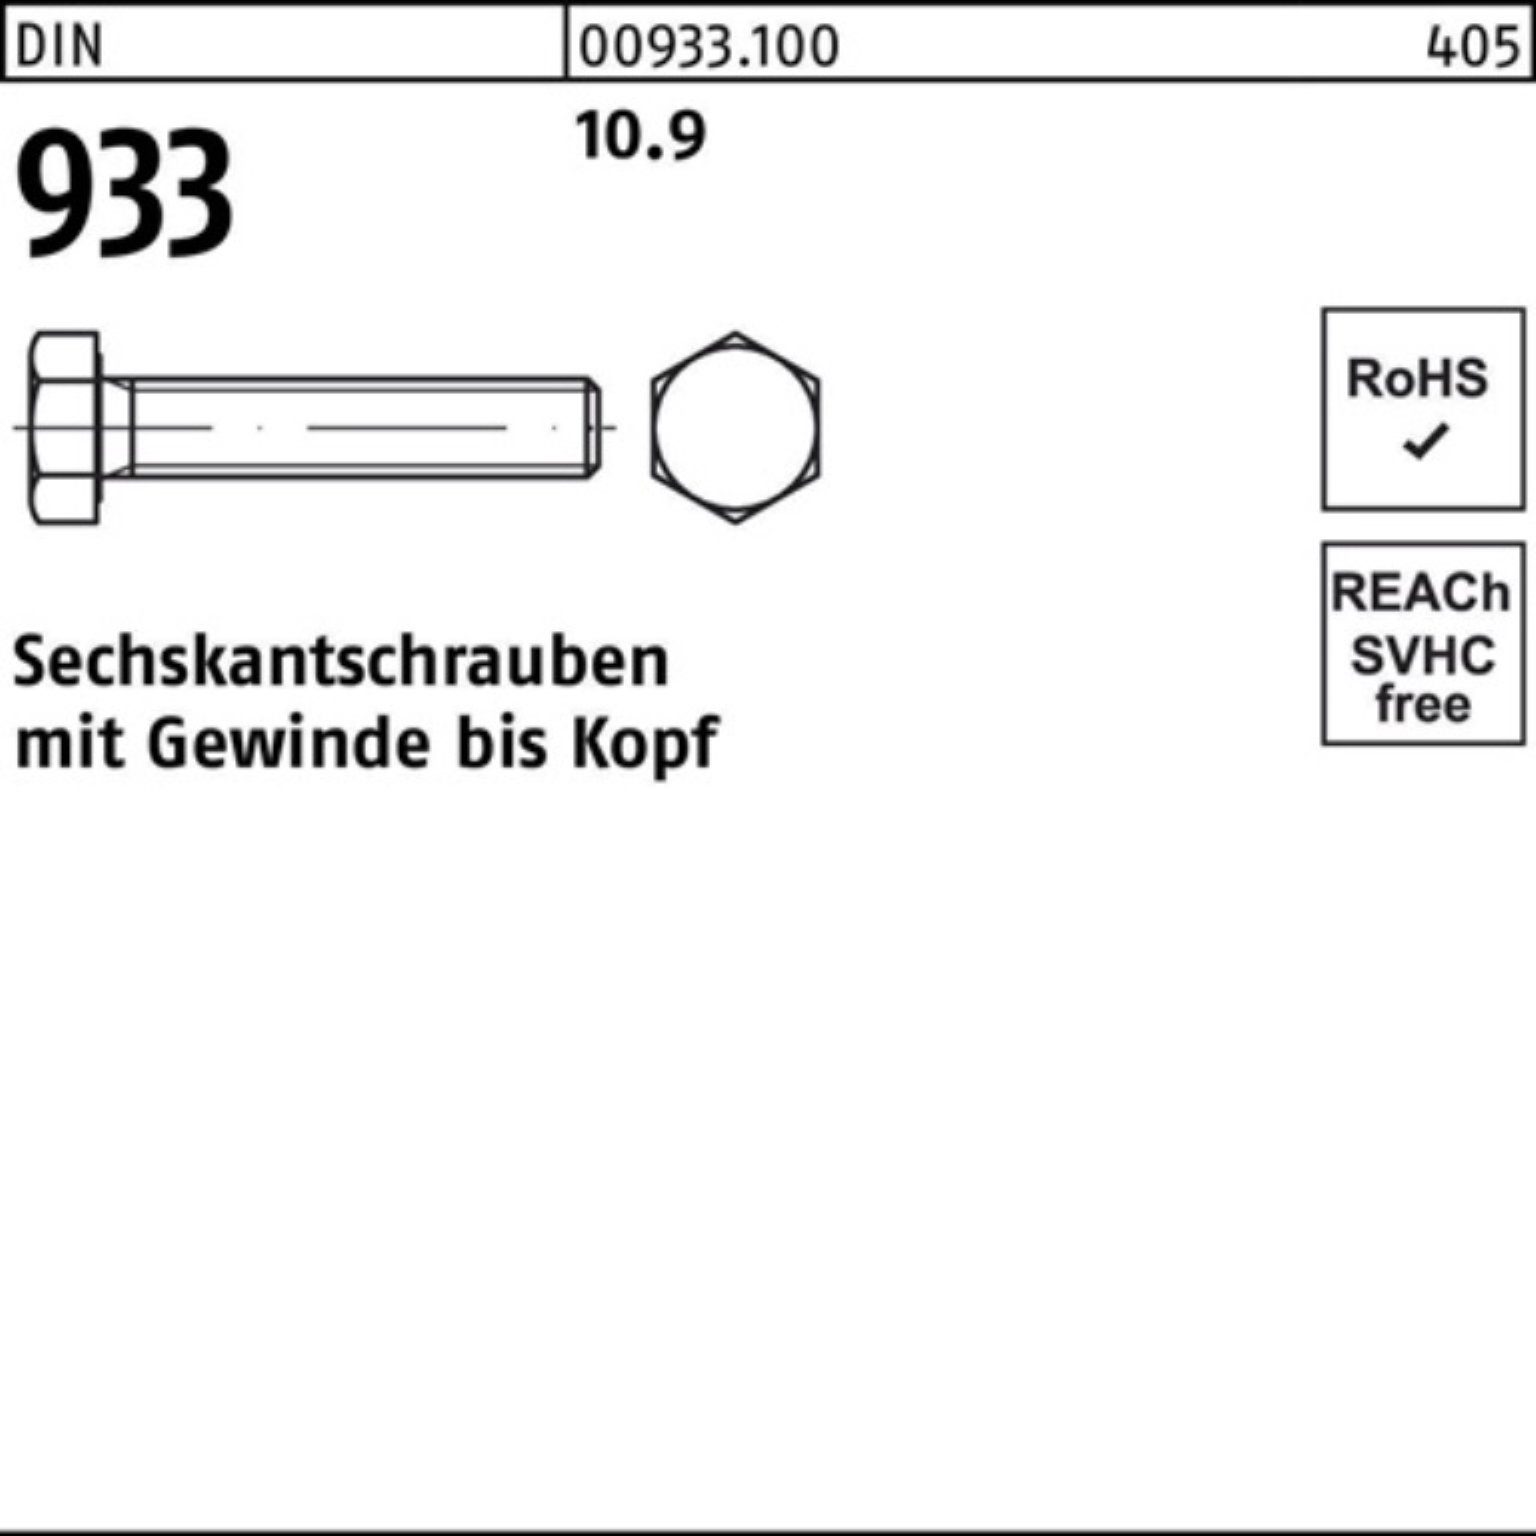 933 Pack 933 Reyher Sechskantschraube VG M24x 10.9 220 Stück 1 DIN 100er DIN Sechskantschraube